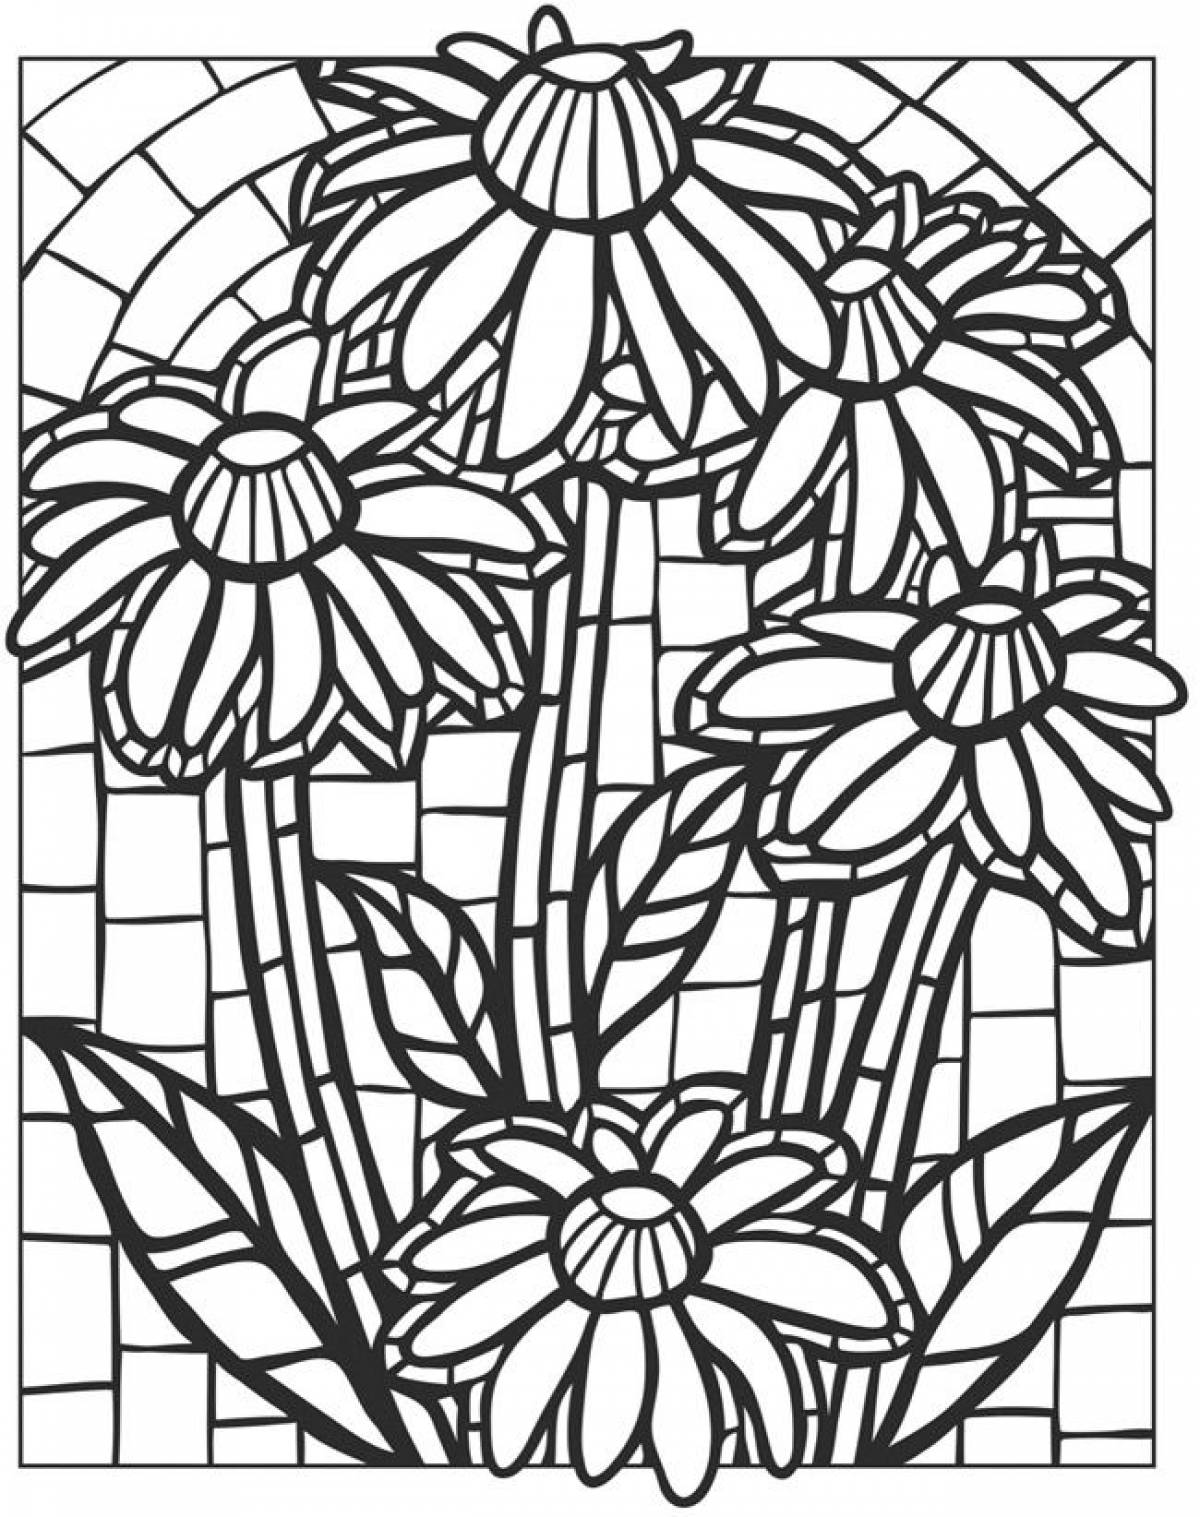 Daisy mosaic